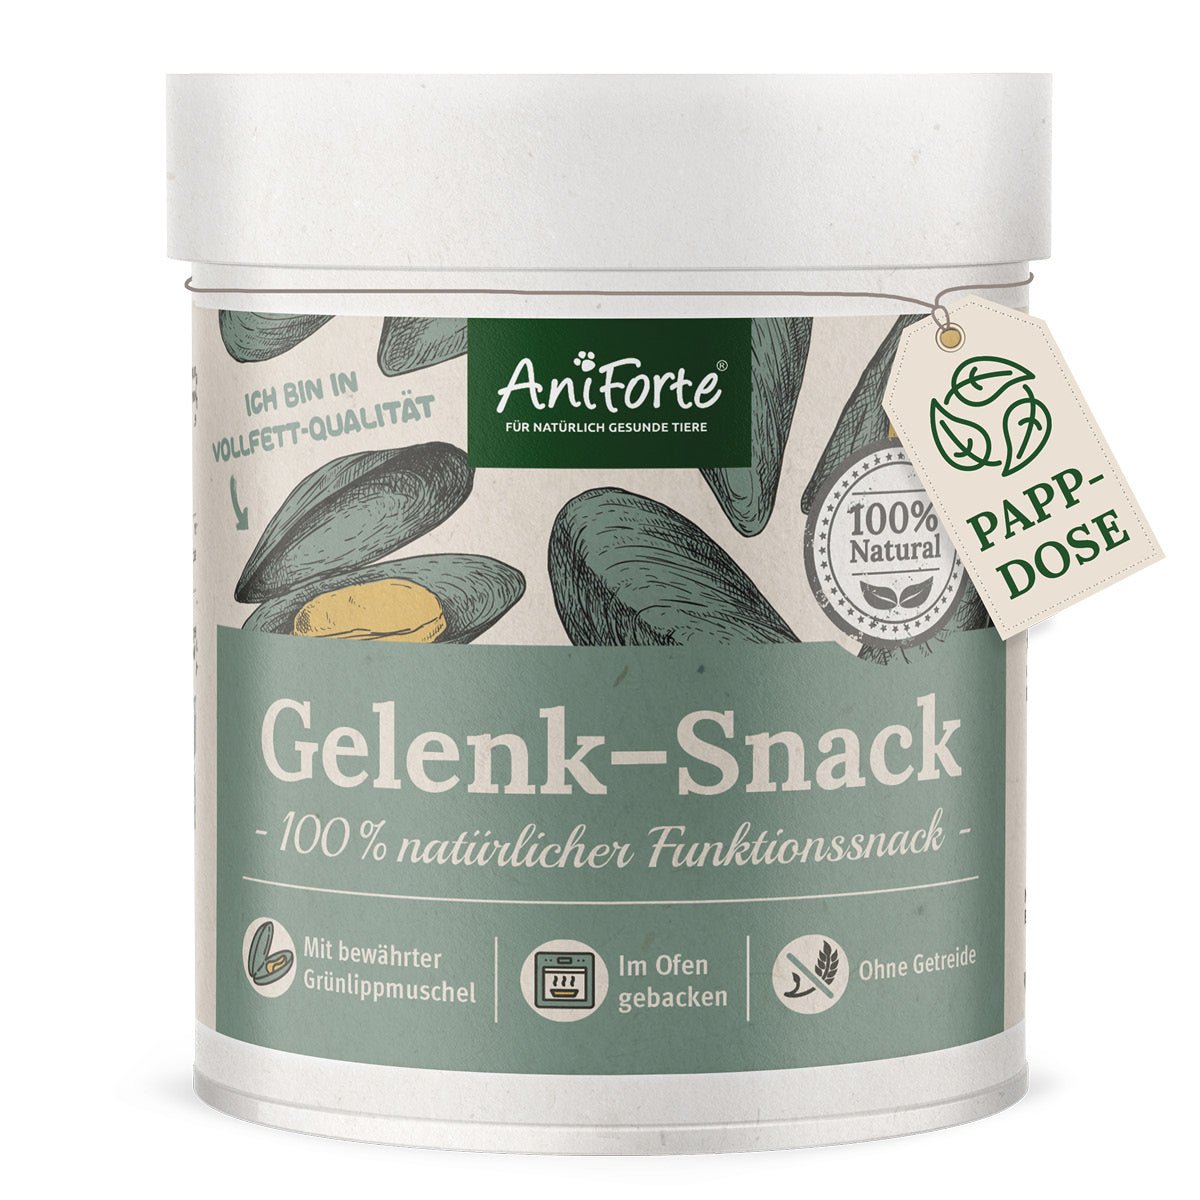 Gelenk-Snack mit Grünlippmuschel, ohne Getreide und schonend nährstoffreich entwickelt